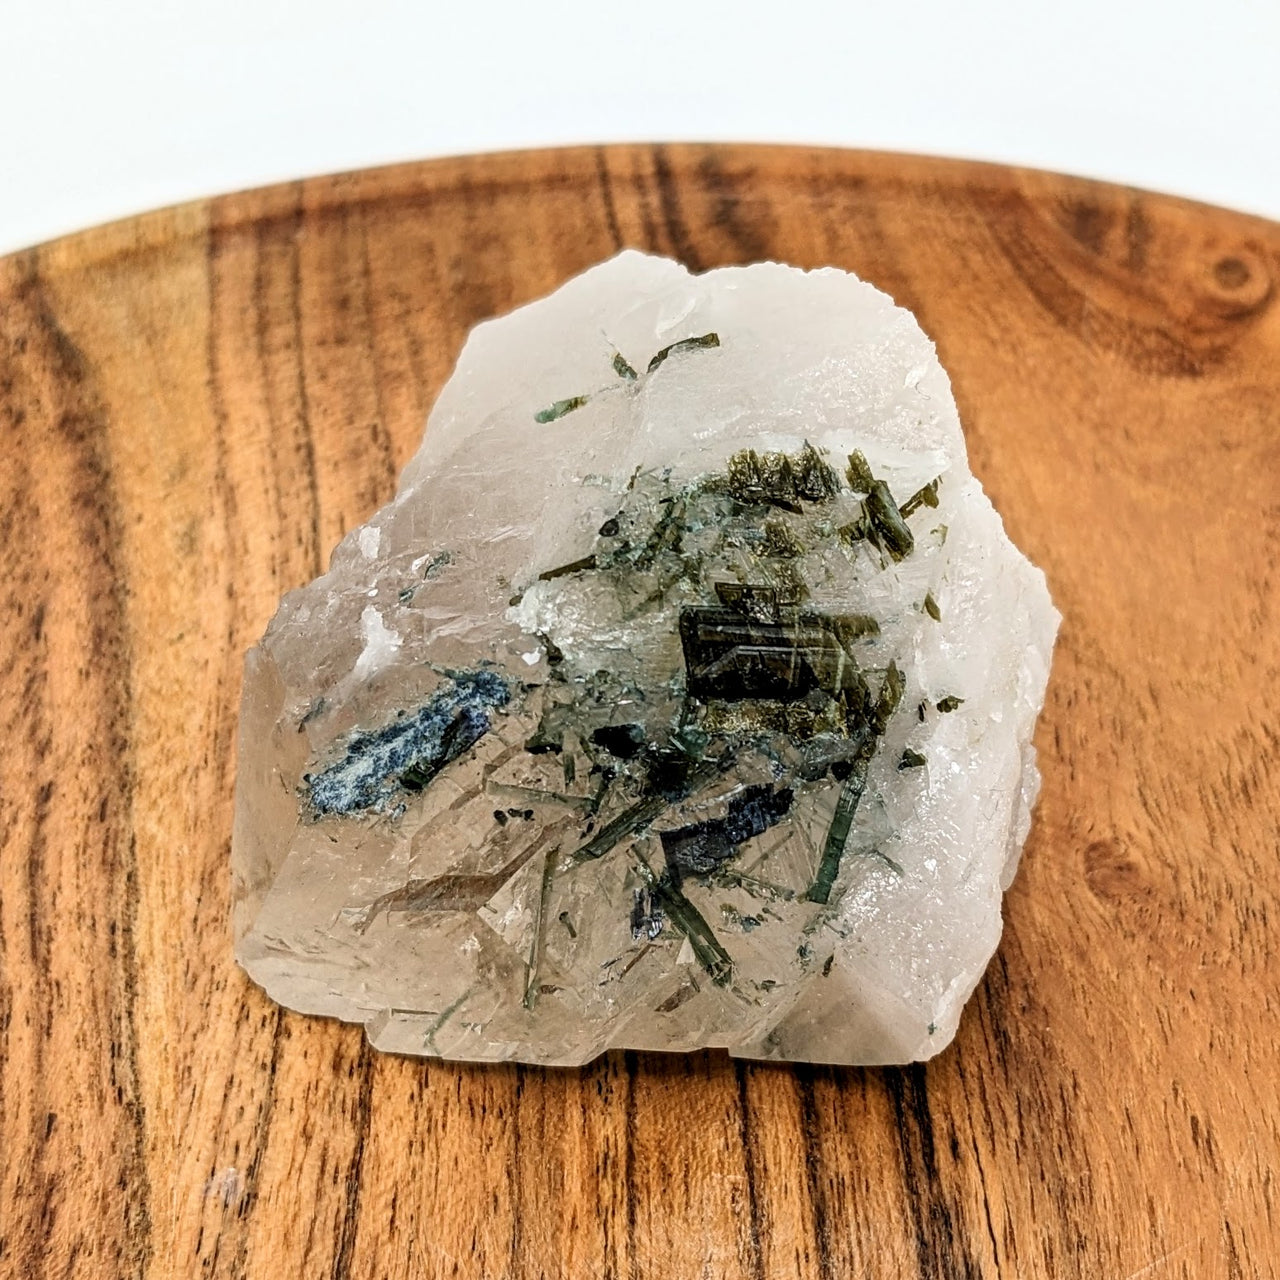 Blue + Green Tourmaline + 2.4" Smoky Quartz + Lepidolite Rough Point #LV2436